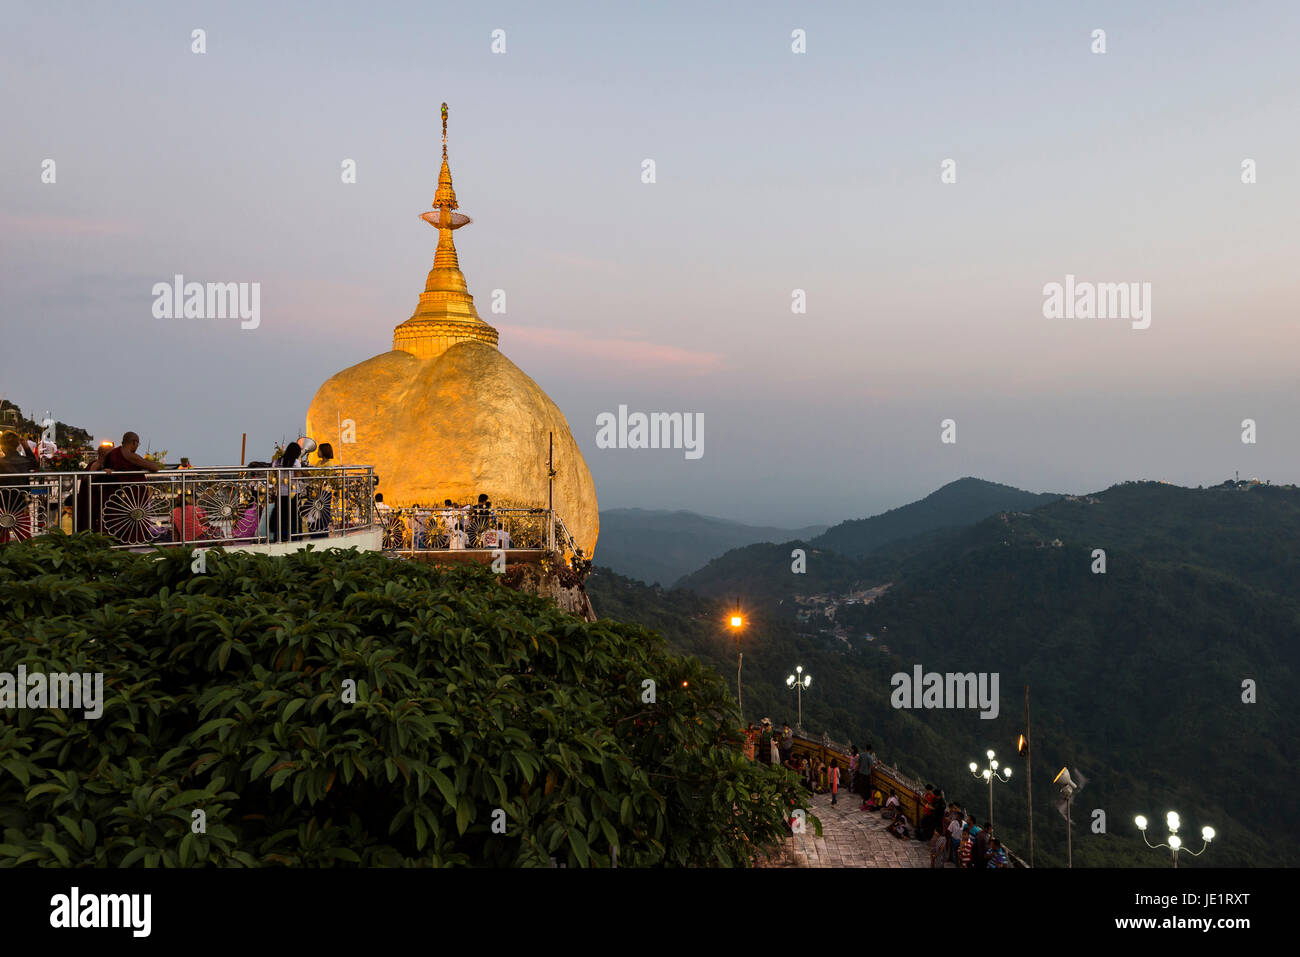 Kyaiktiyo Pagoda, también conocido como Golden Rock, es un conocido lugar de peregrinación budista en el estado de Mon, Birmania. Foto de stock